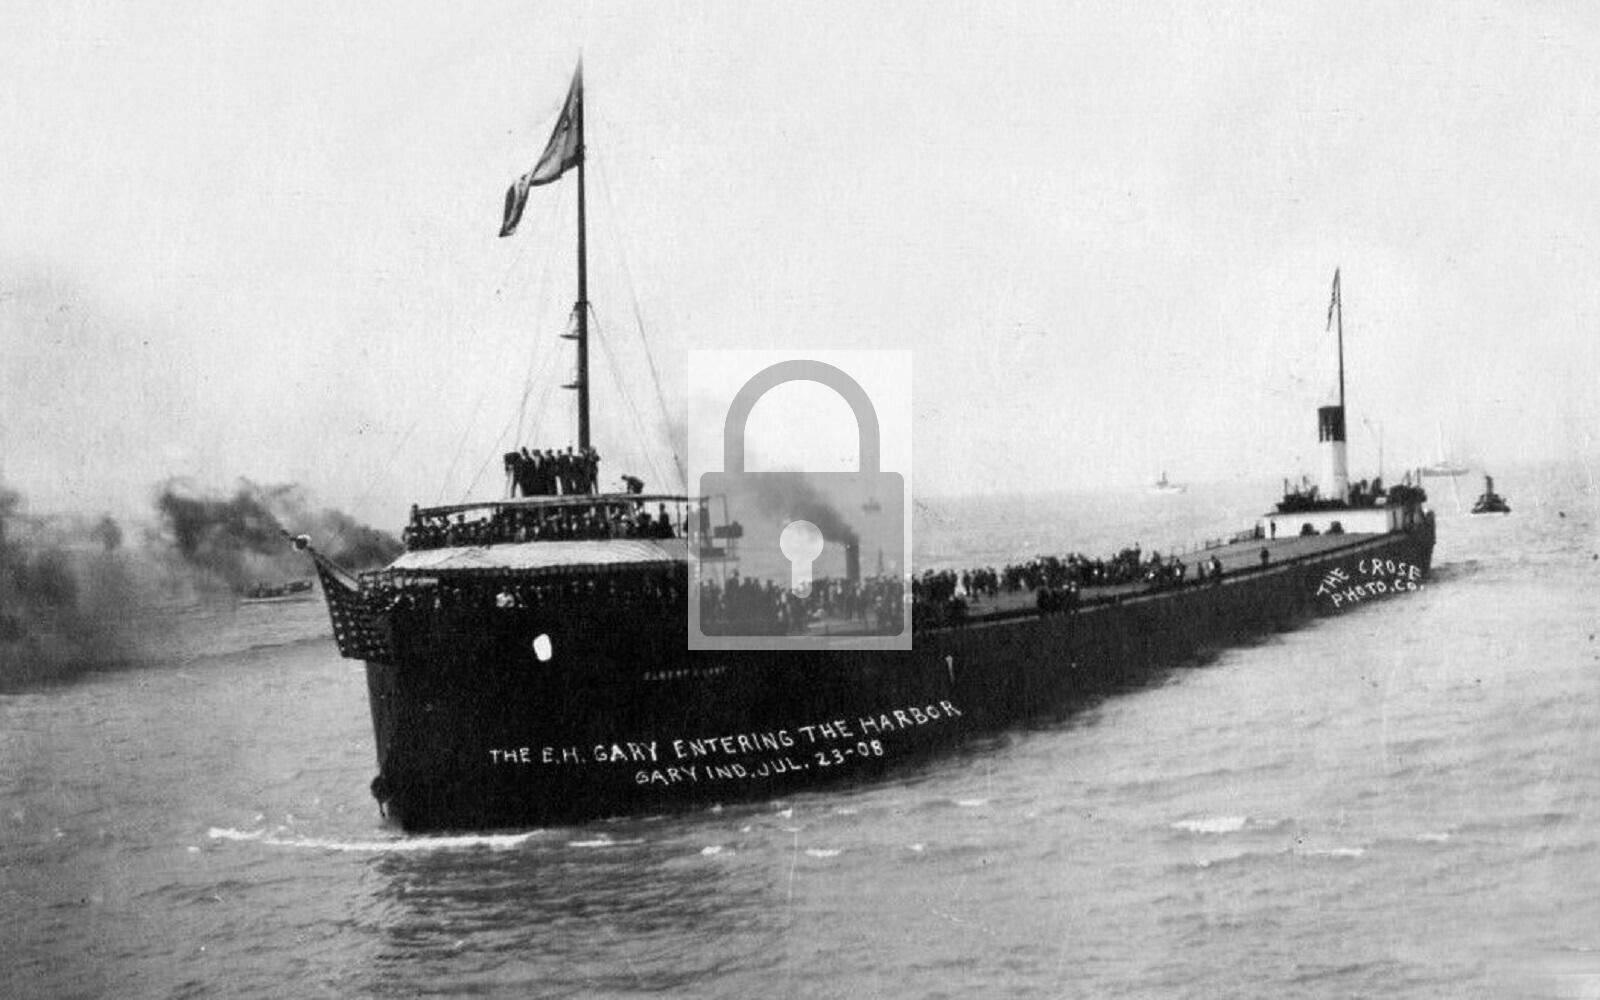 E H Gary Steamer Ship Entering Harbor Gary Indiana IN Reprint Postcard